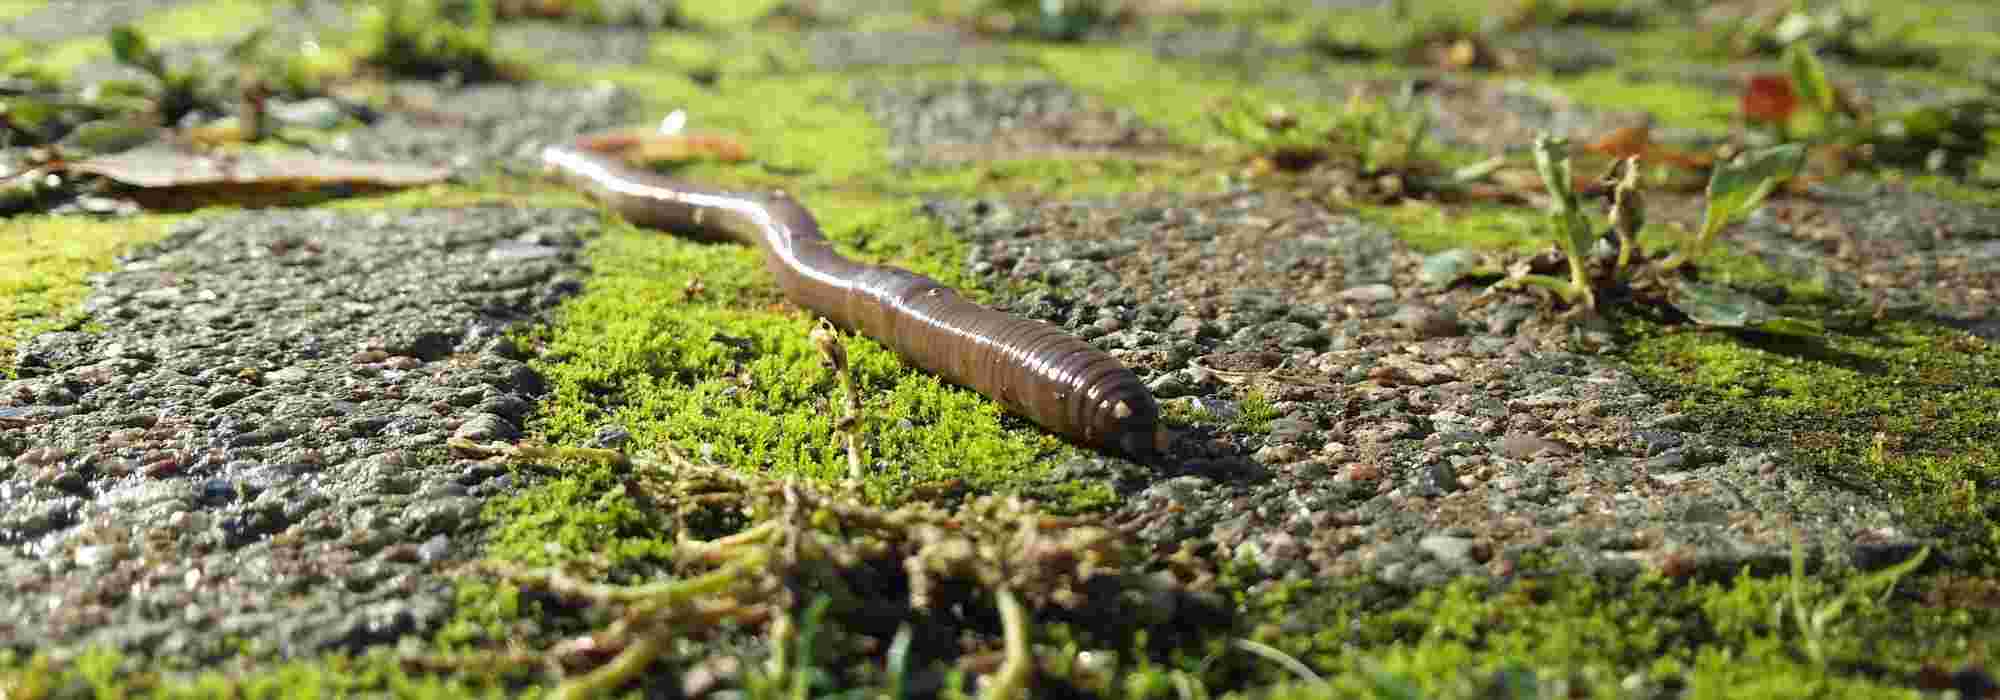 Le ver de terre ou lombric : un indispensable allié au jardin